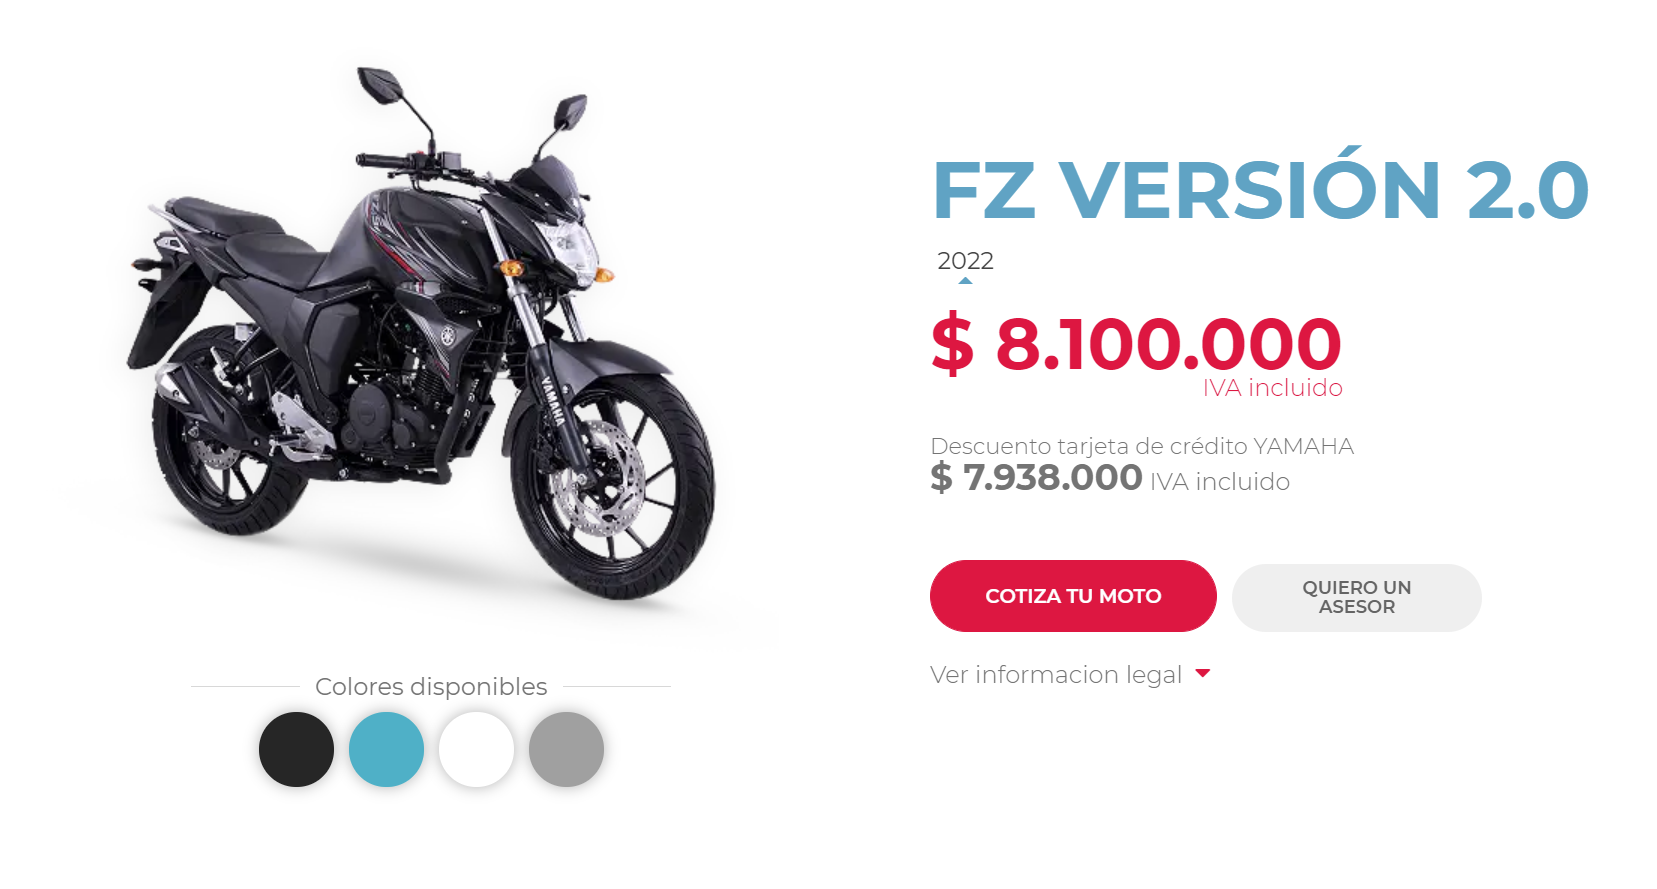 Precio Yamaha FZ 2.0 2022